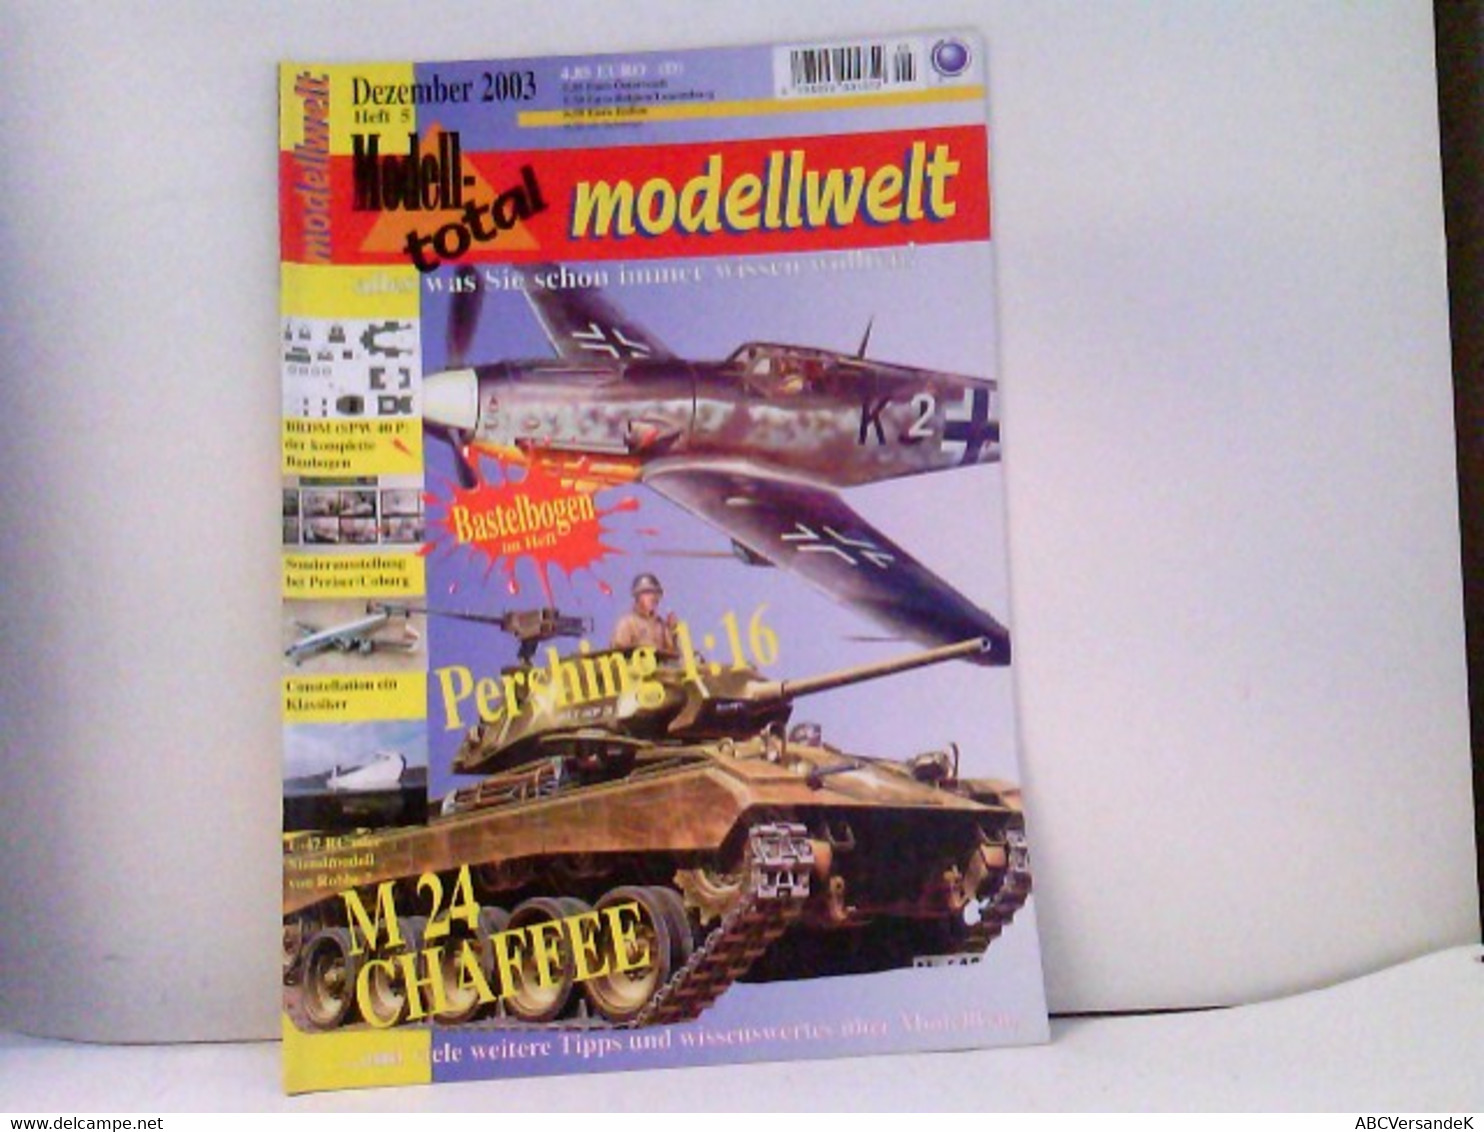 MODELLWELT Das Magazin Für Modellbau 12/2003 - Police & Military